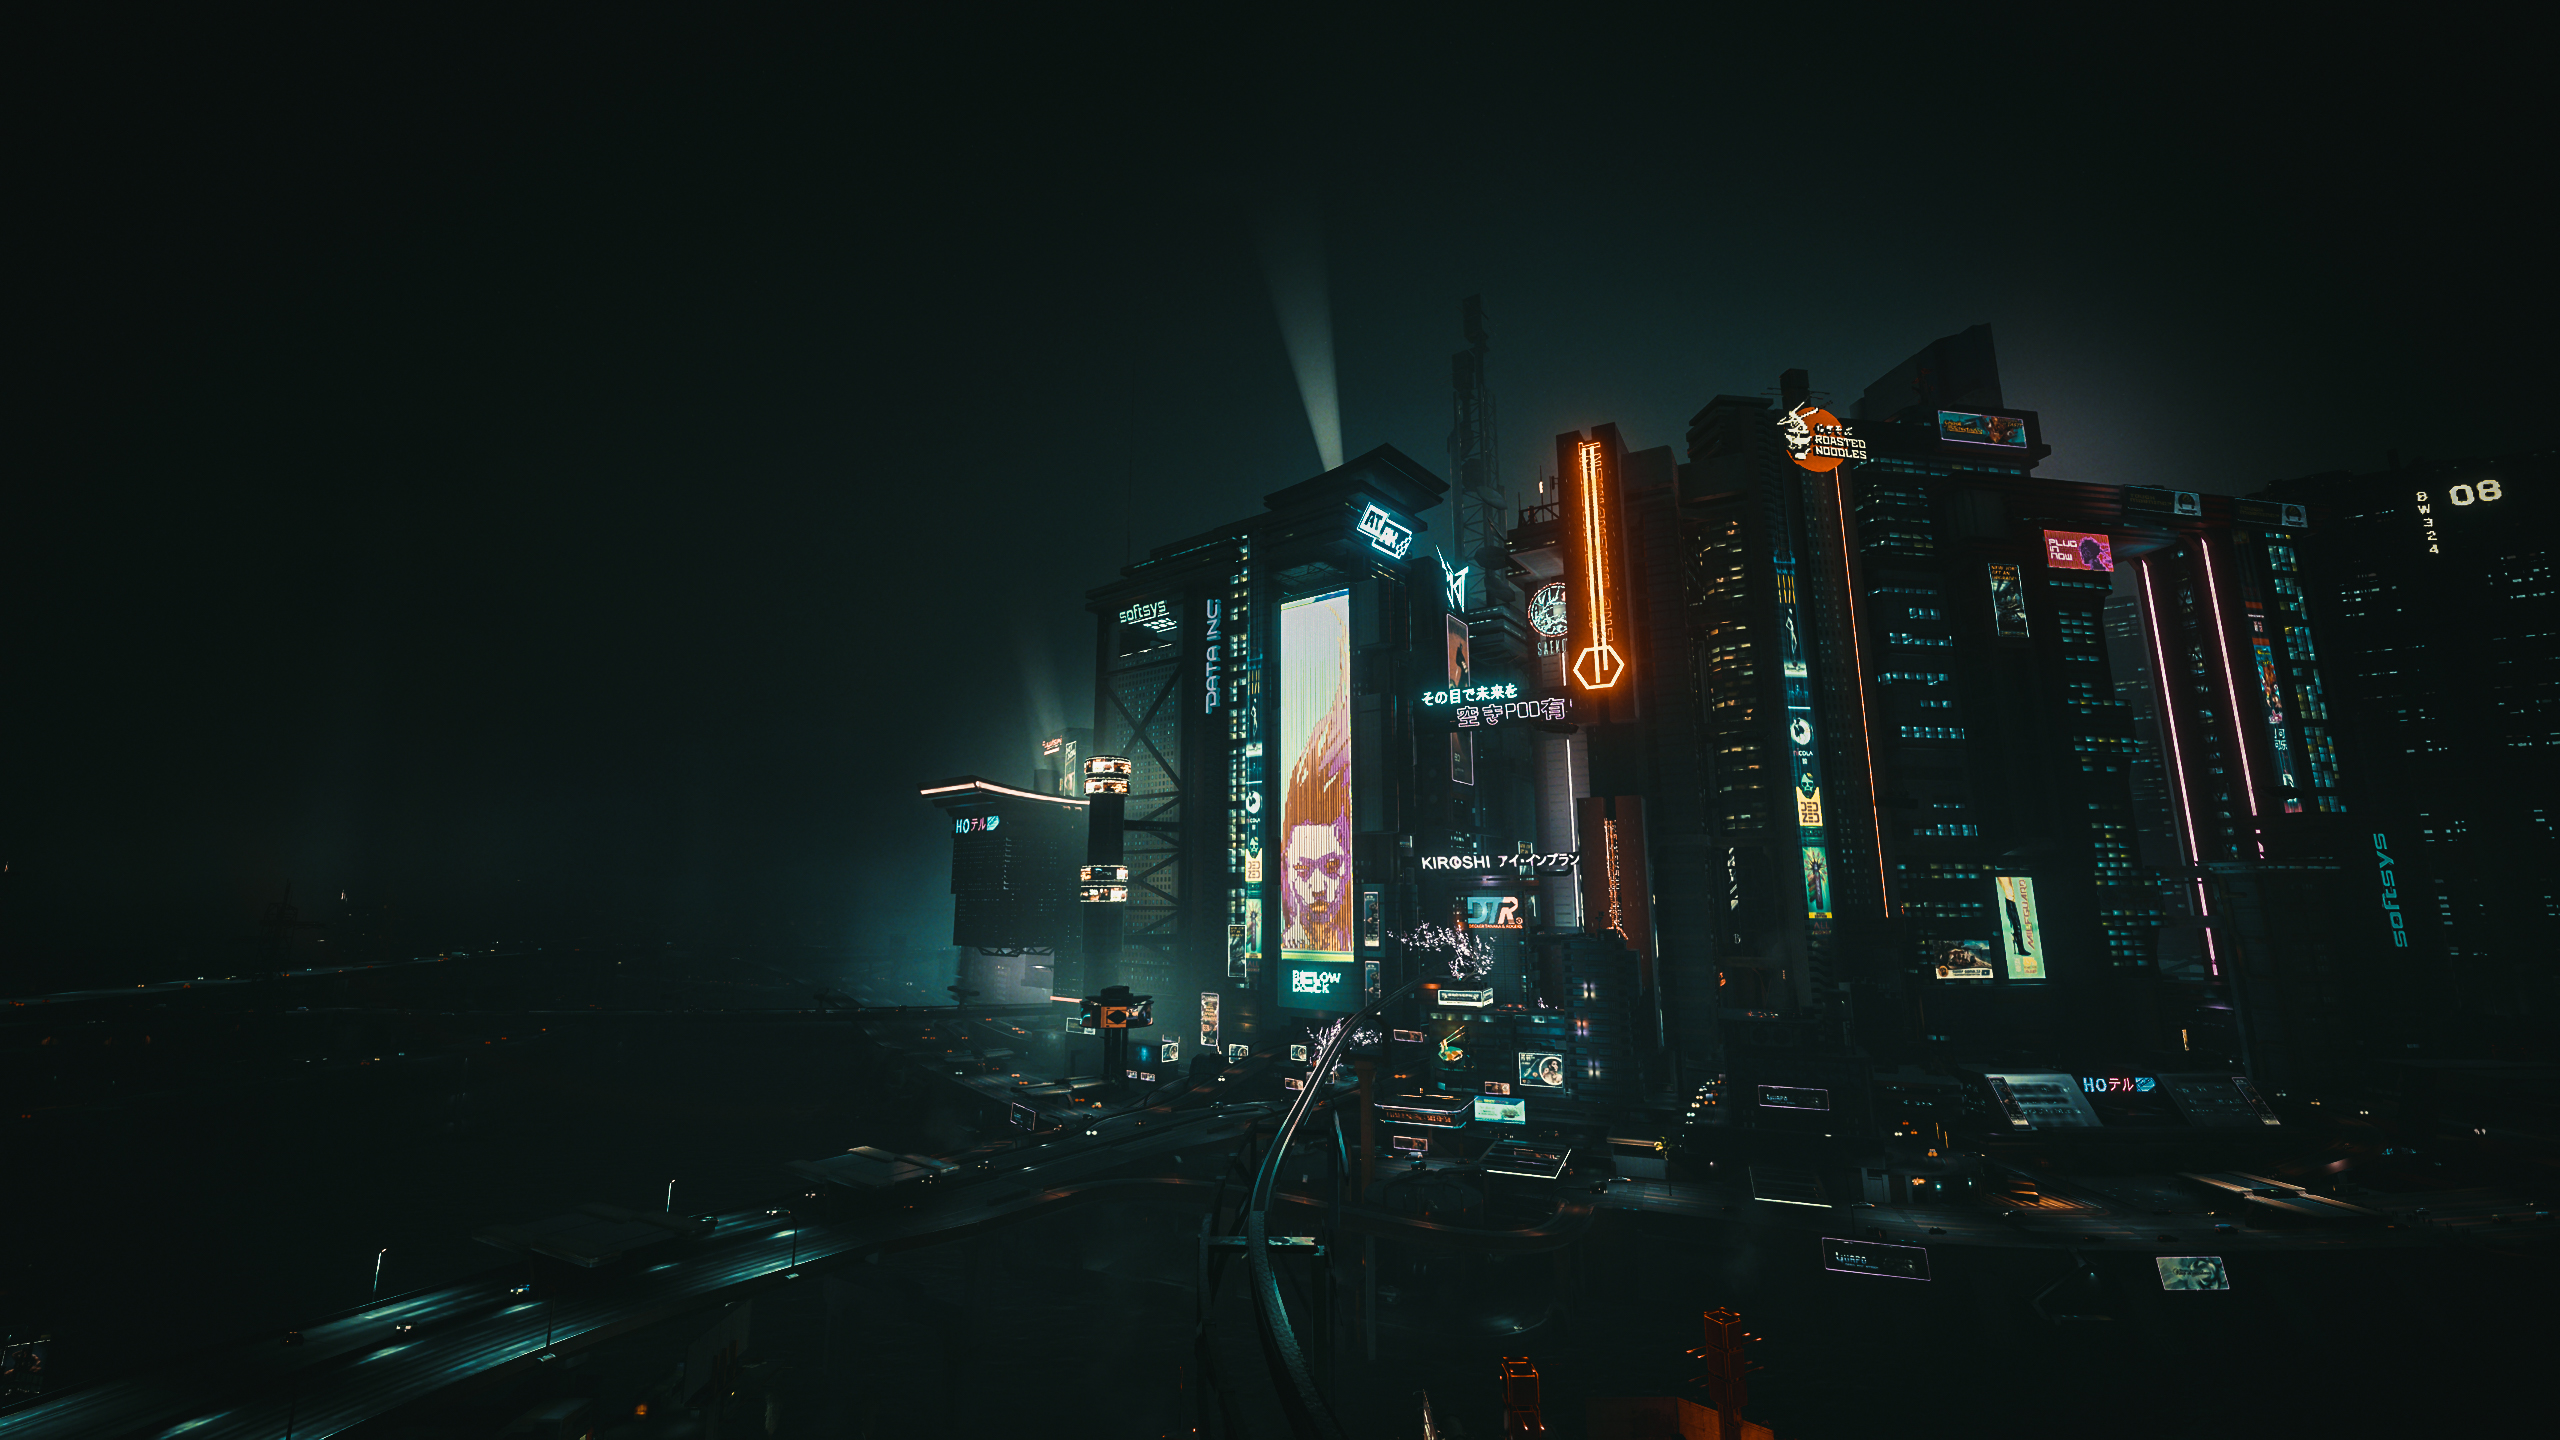 General 2560x1440 cyberpunk Cyberpunk 2077 cyber city futuristic city neon video games